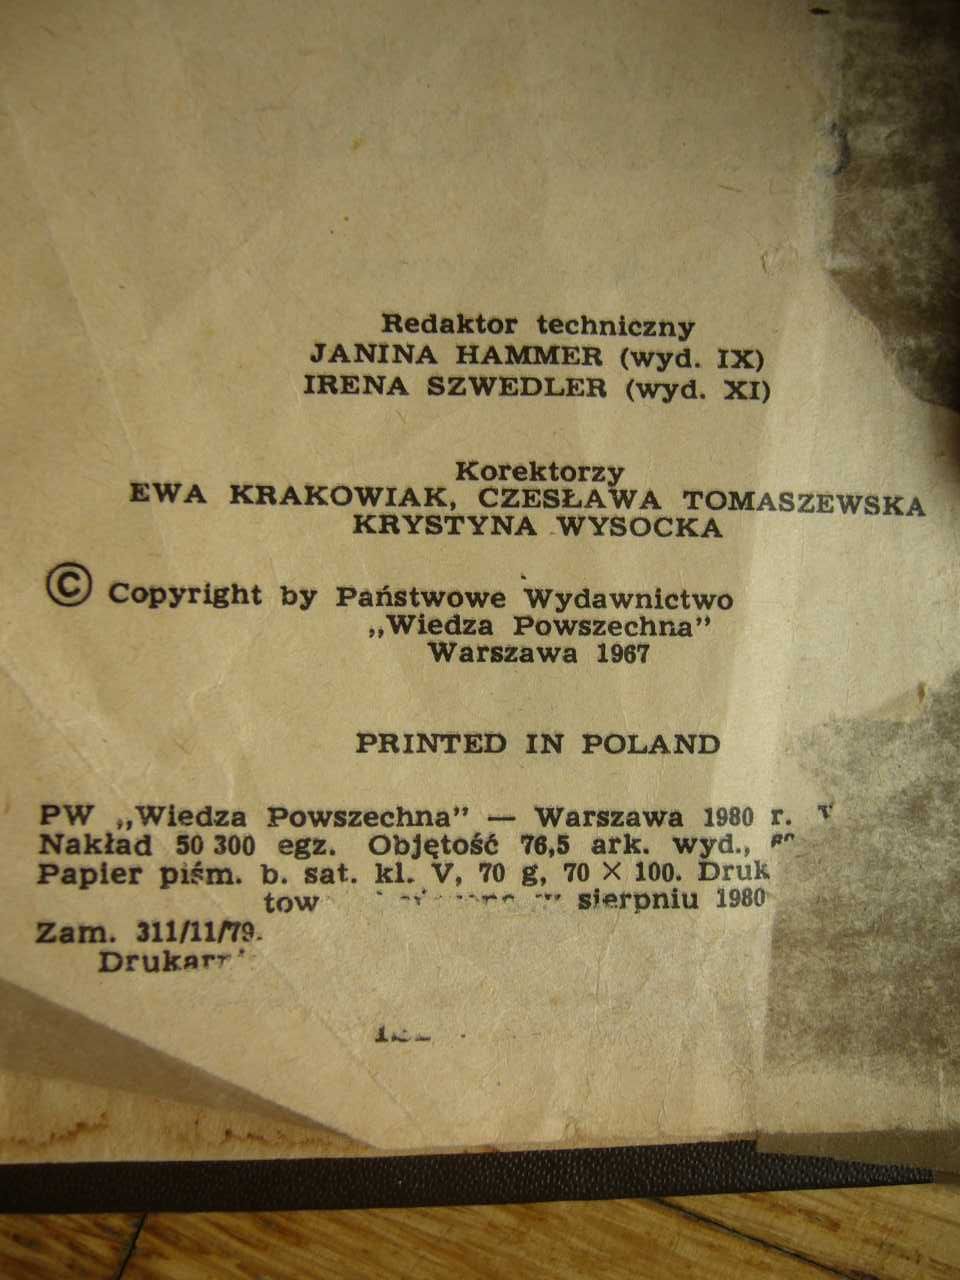 Słownik wyrazów obcych i zwrotów obcojęzycznych, Władysław Kopaliński